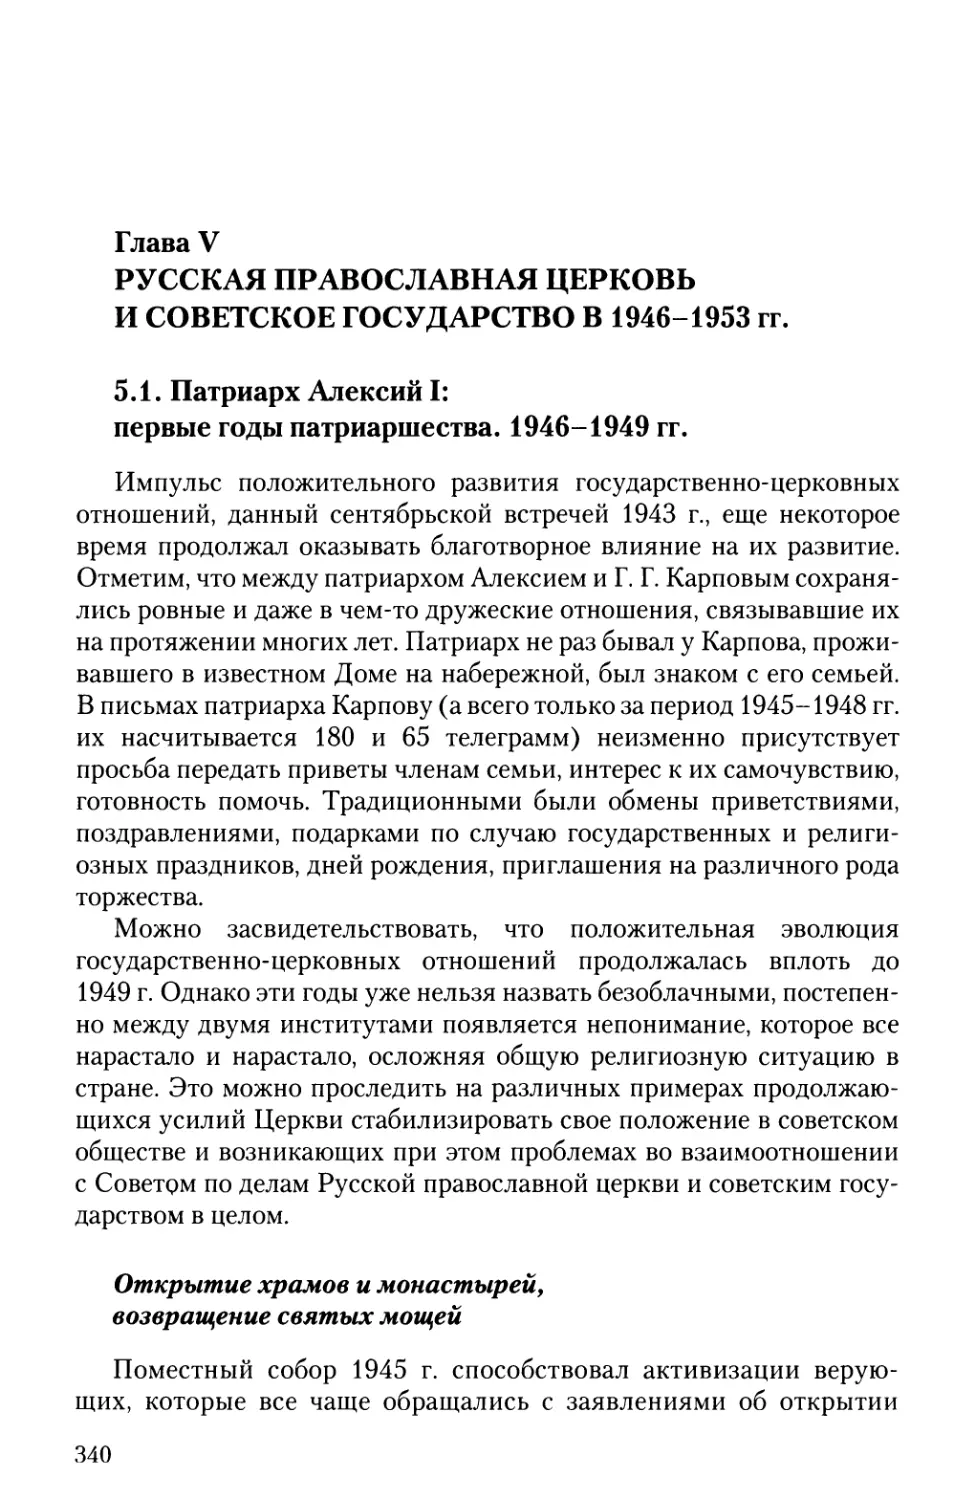 Глава V. Русская православная церковь и советское государство в 1946-1953 гг.